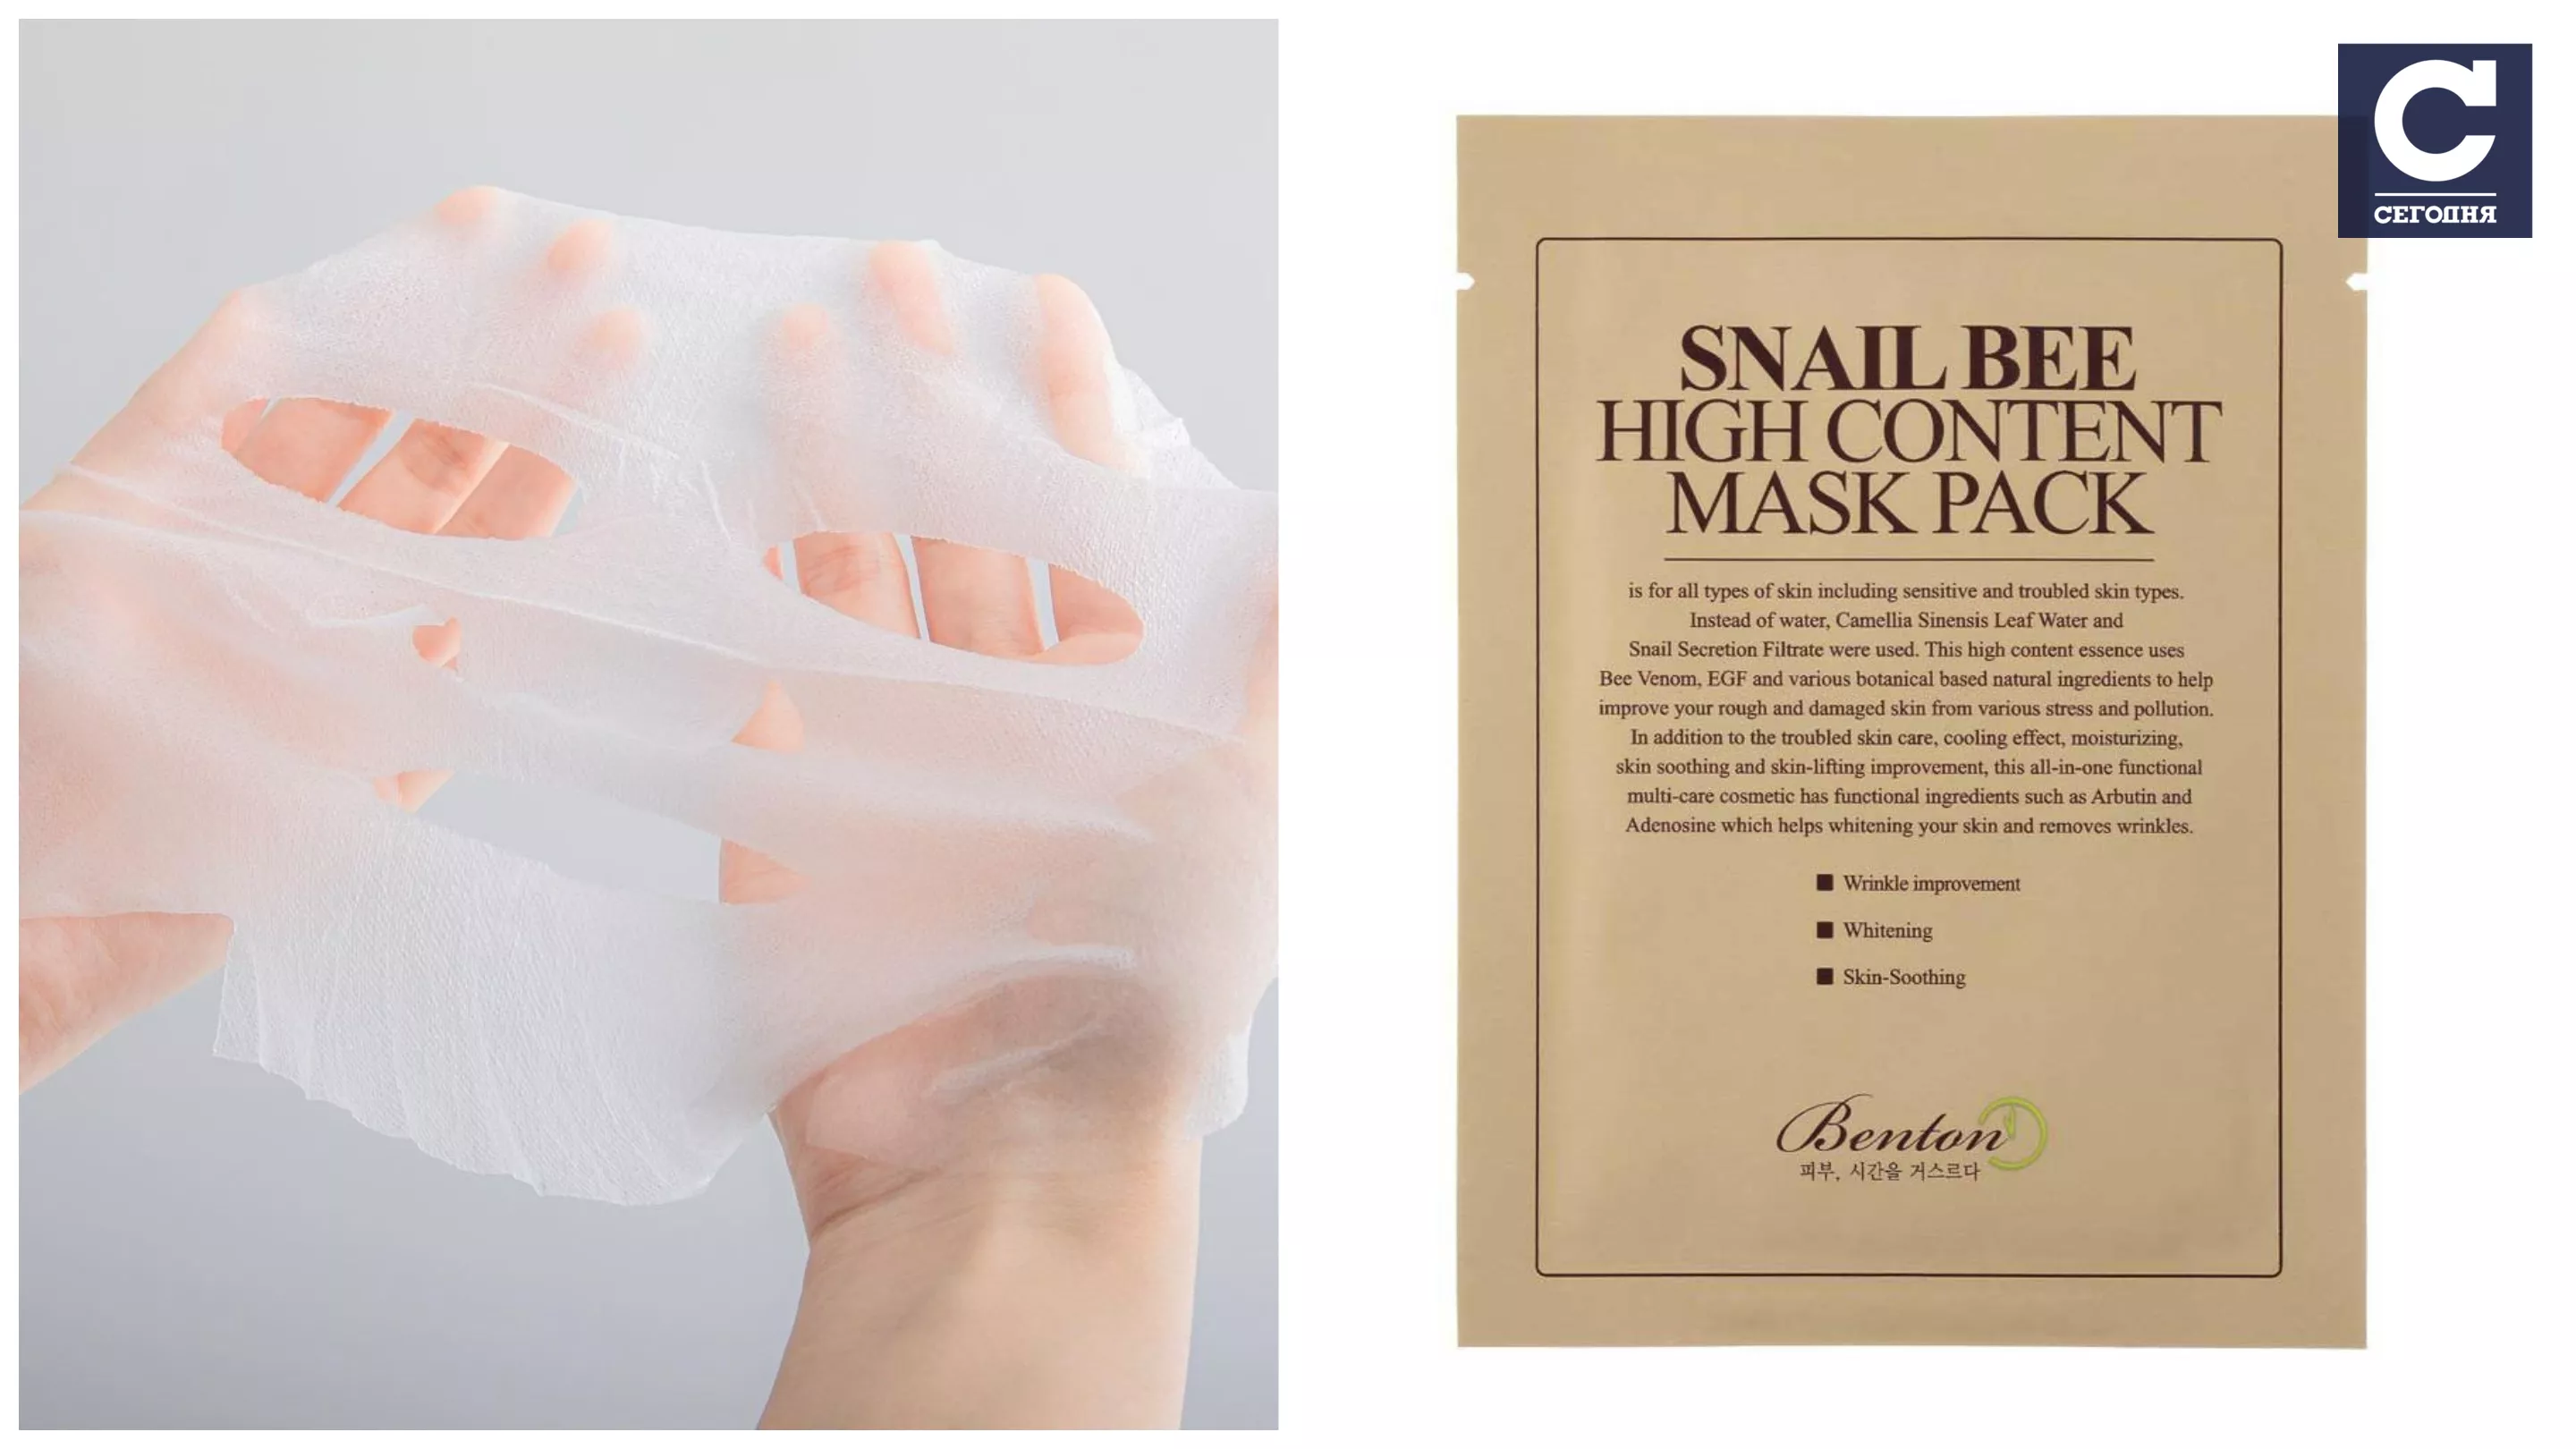 Тканевая маска с муцином улитки и пчелиным ядом Benton (650 грн)